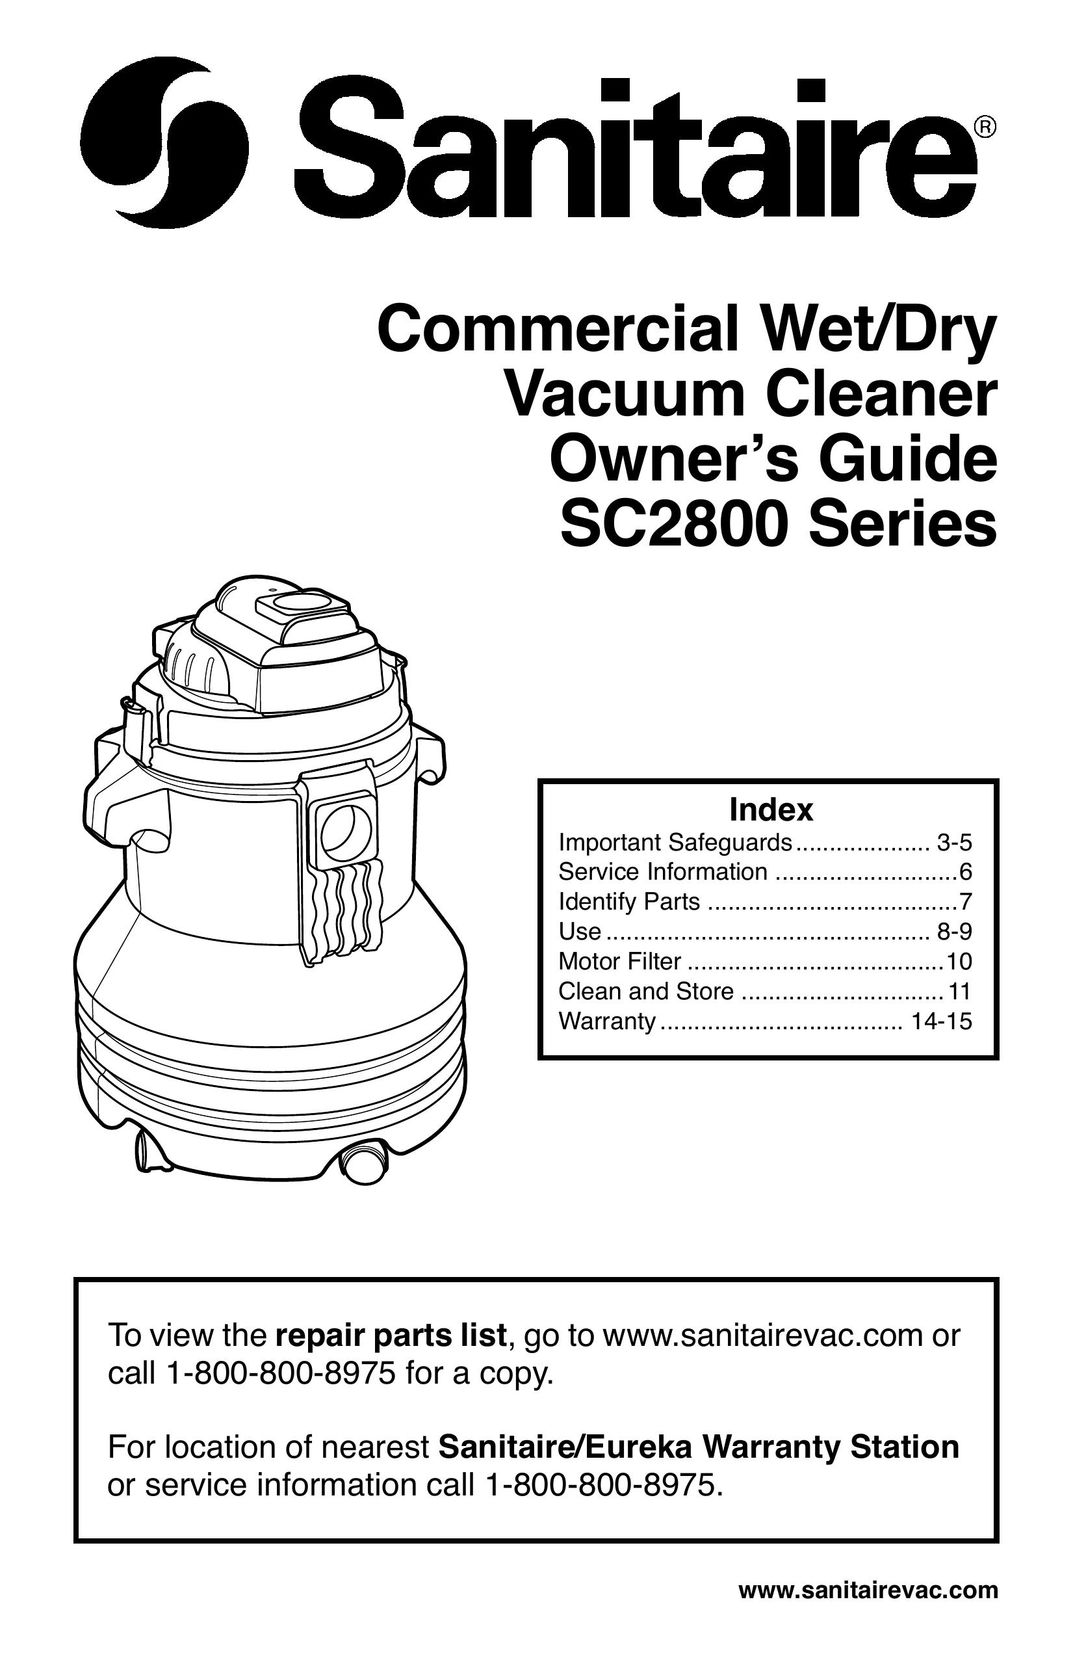 Sanitaire SC2800 Vacuum Cleaner User Manual